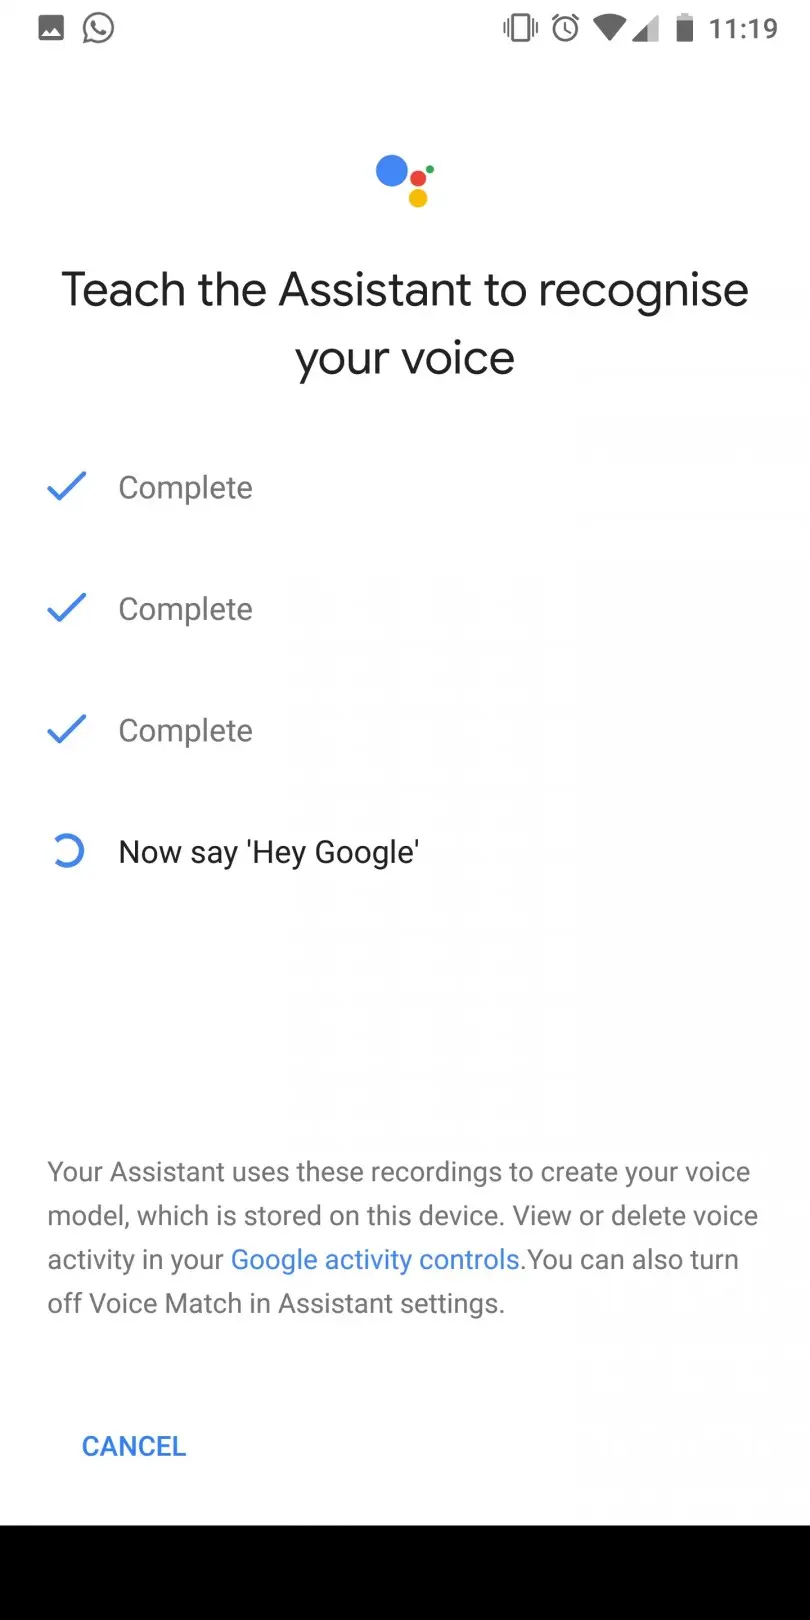 Hey Google, comando disponible para pedir ayuda al asistente en smartphones